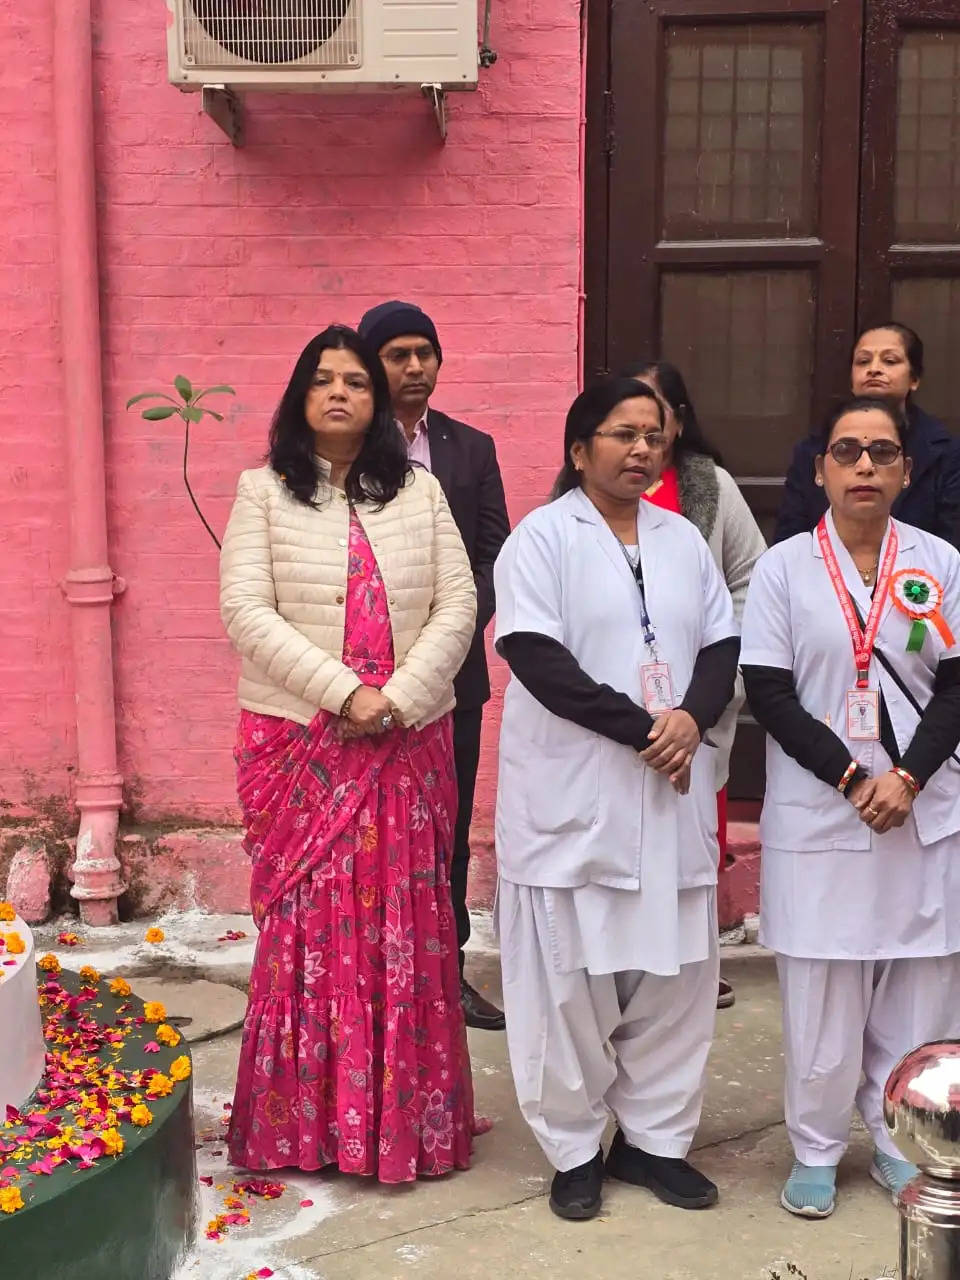 Republic Day: महिला चिकित्सालय कबीरचौरा में 75 वें गणतंत्र दिवस का आयोजन, प्रमुख अधिकारी मनीषा सिंह रही उपस्थित 